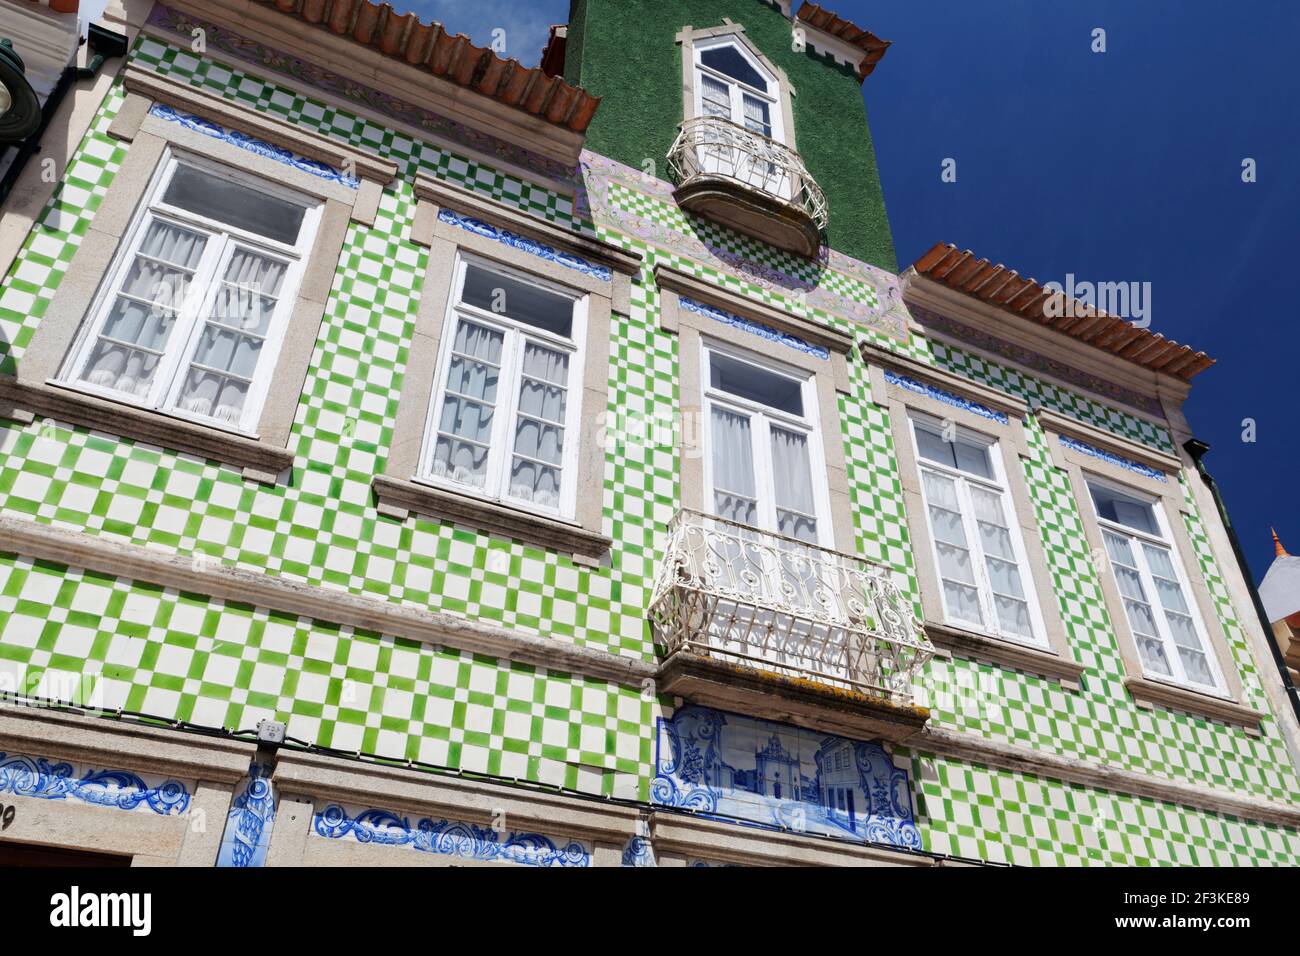 Des tuiles azulejos en céramique peinte ornent la façade d'une maison à Ilhavo, Aveiro, Beira Litoral, Portugal Banque D'Images